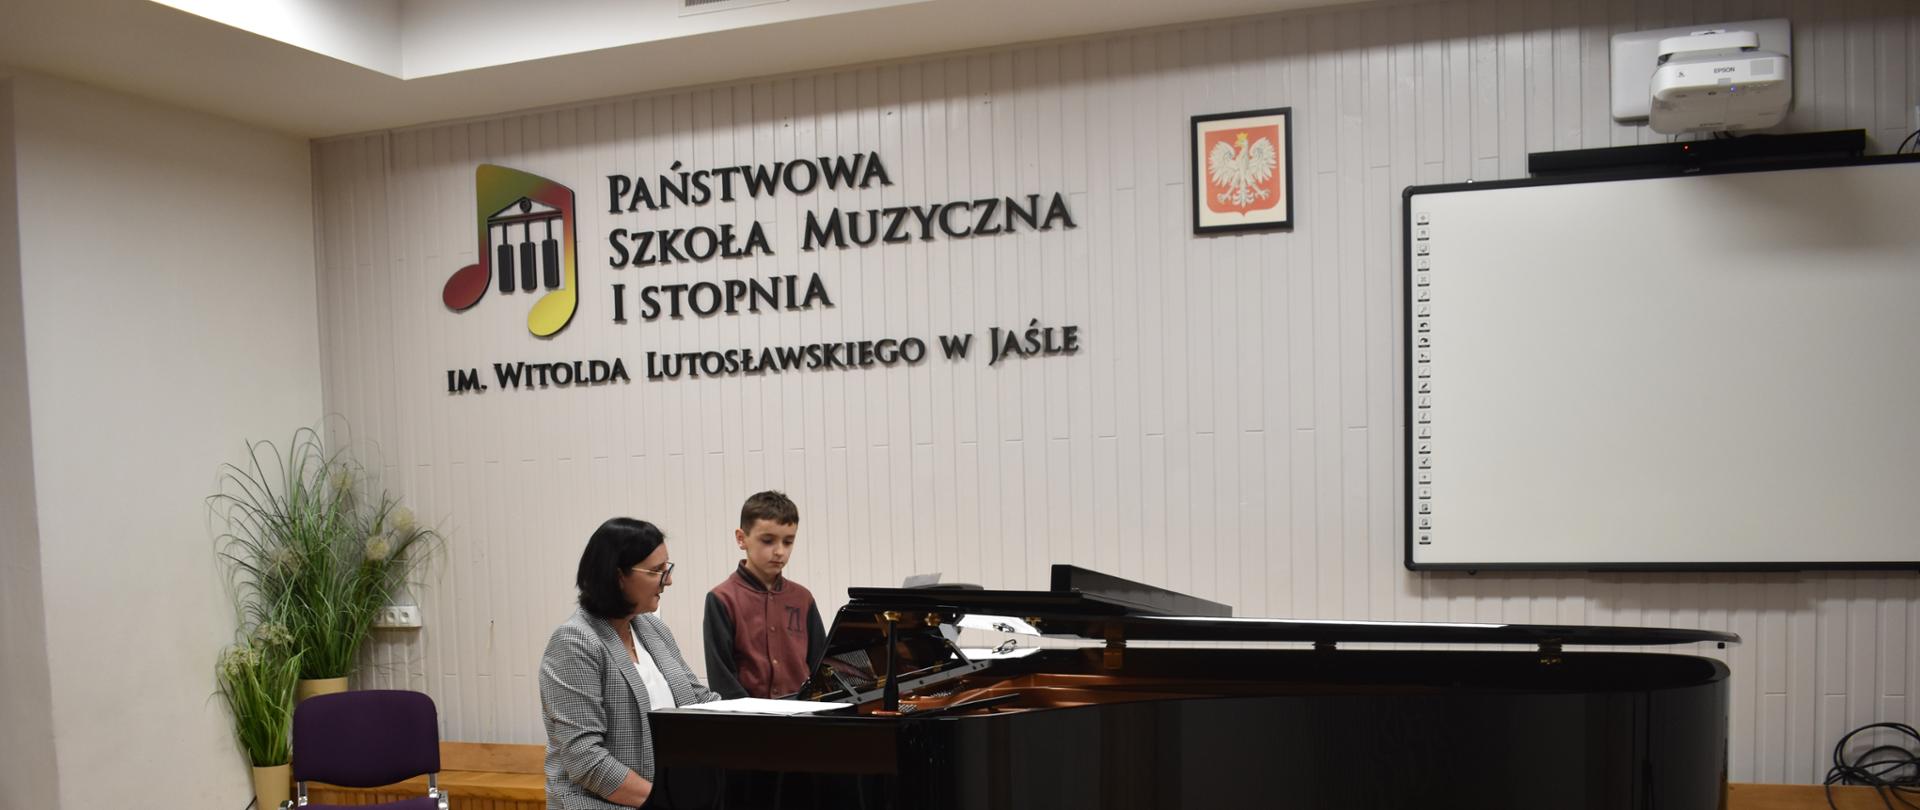 Na zdjęciu widnieje nauczyciel fortepianu mgr Dorota Skibicka, która w auli szkoły instruuje ucznia jak grać na fortepianie. Tło zdjęcia jest białe i jasno brązowe.